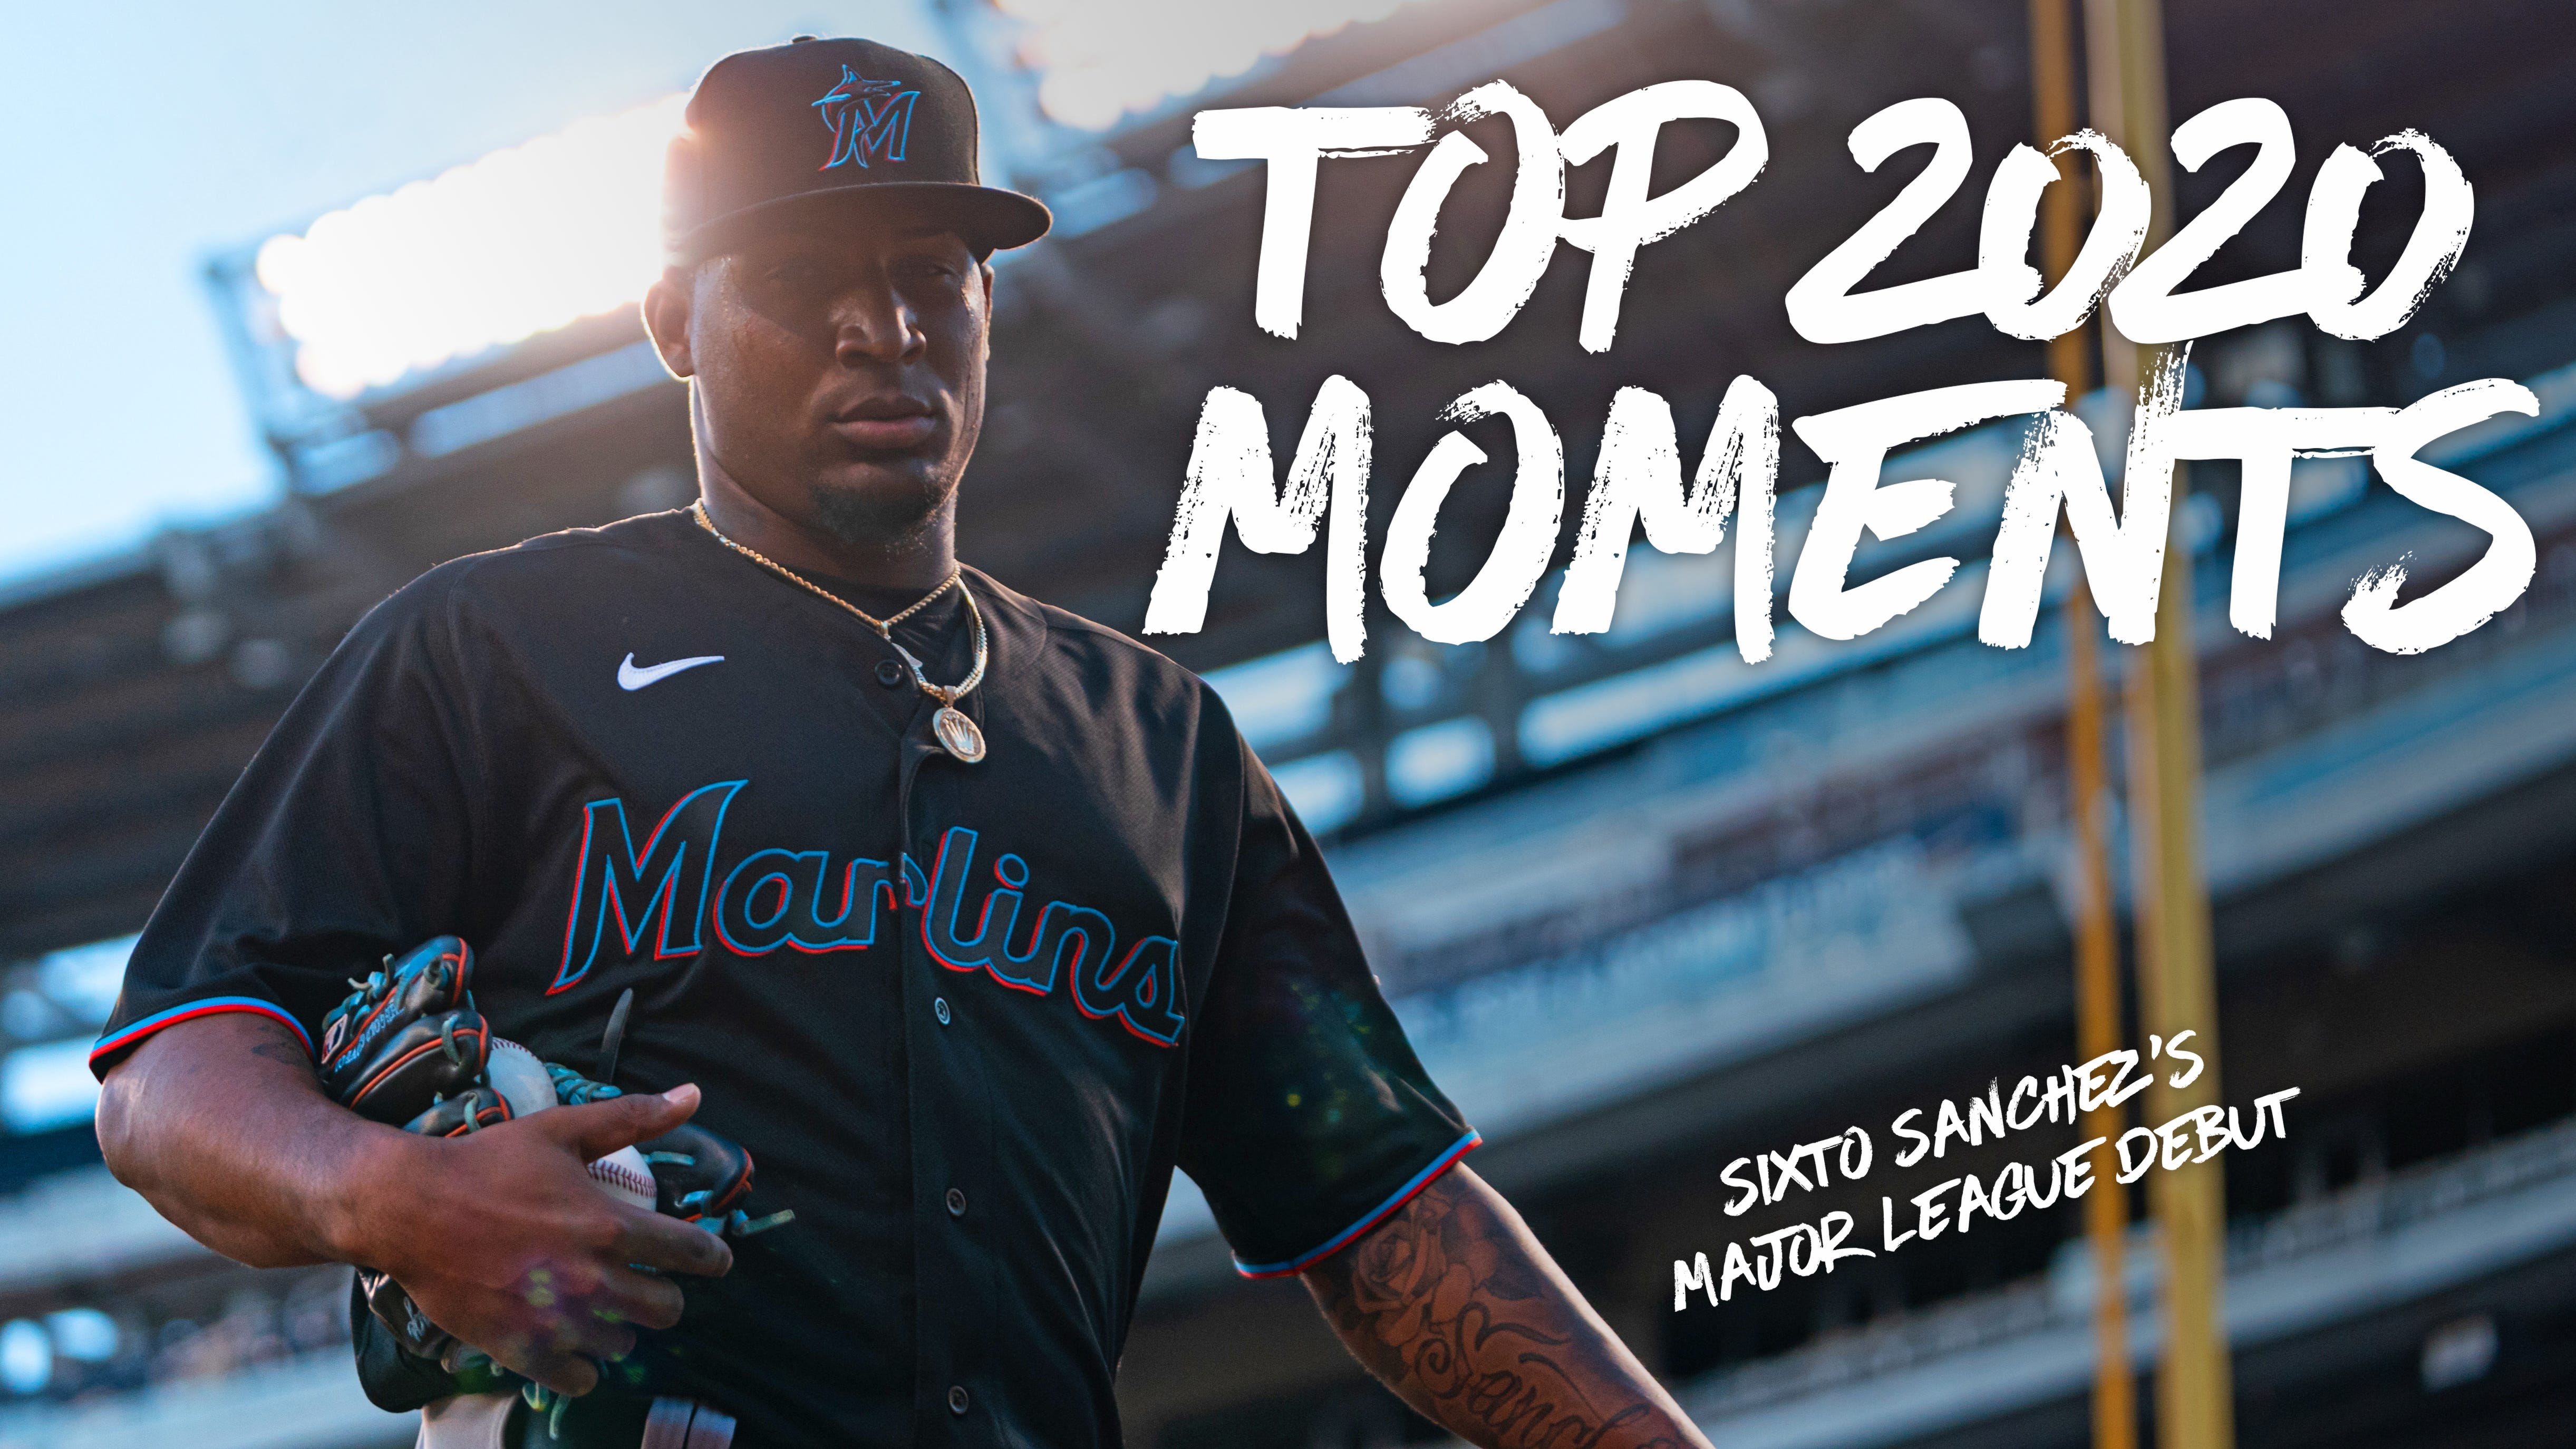 Top 2020 Moments: Sixto Sanchez's Major League Debut, by Joseph Guzy